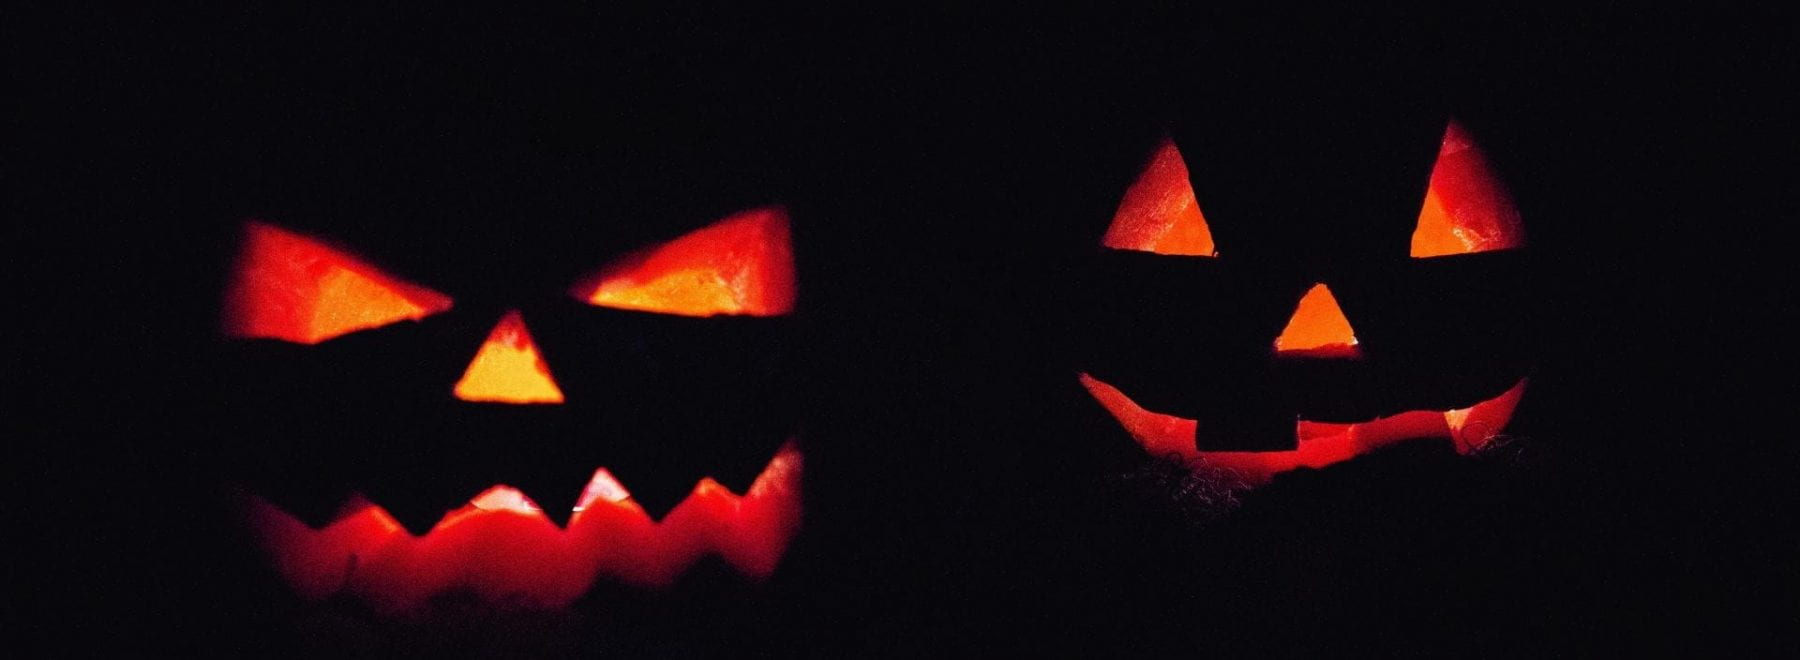 halloween pumpkins in the dark, lit up